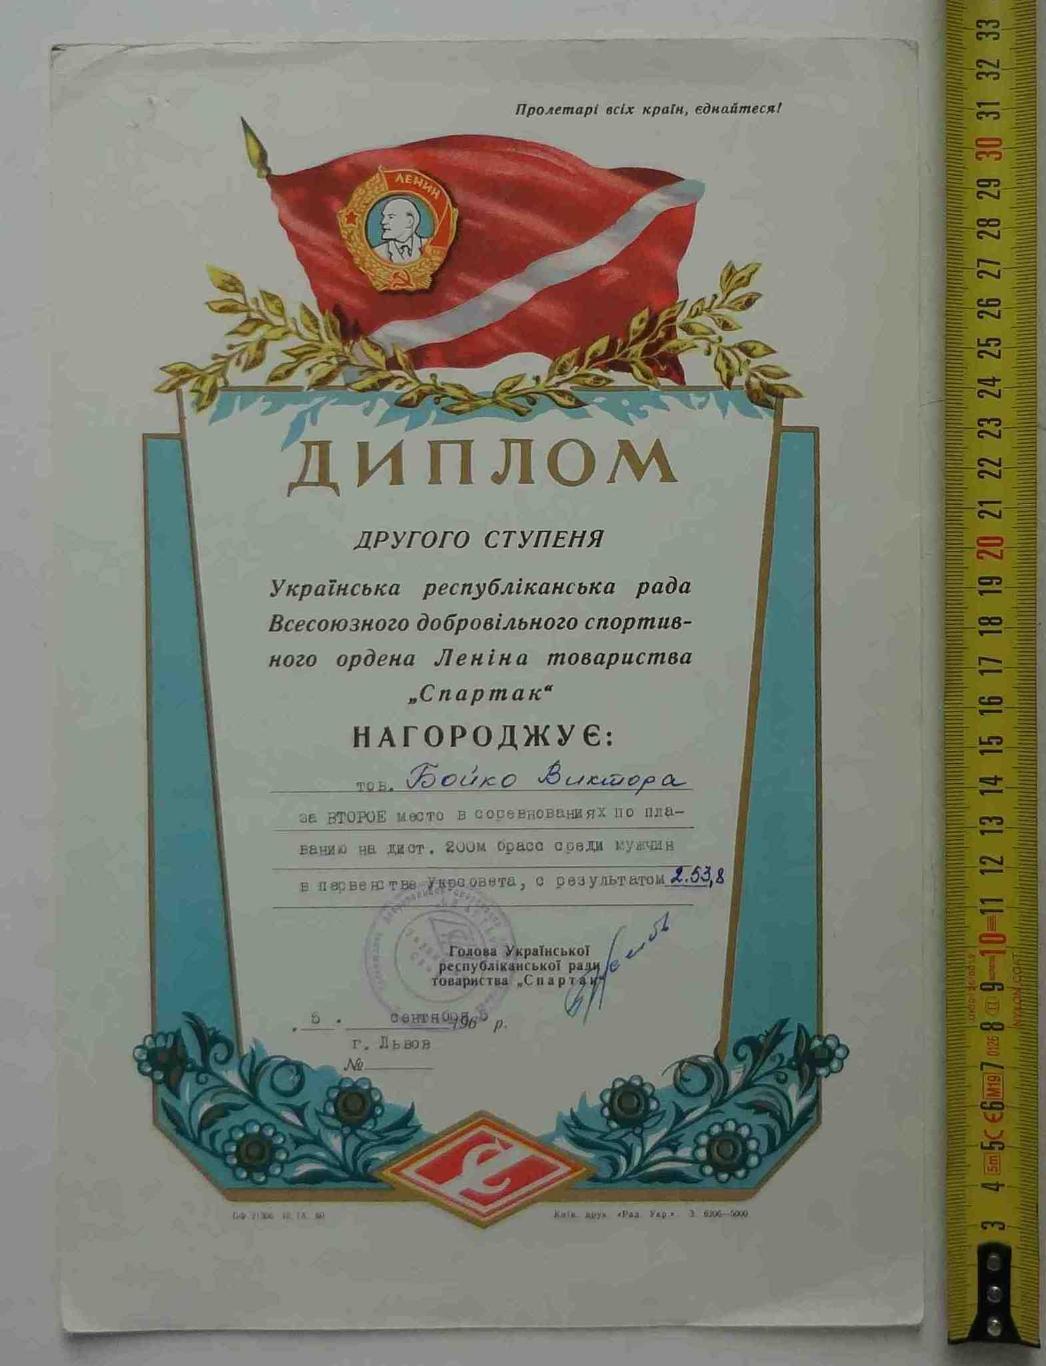 Диплом 2 степени Украинский республиканский совет ДСО Спартак 1965 плавание (11)